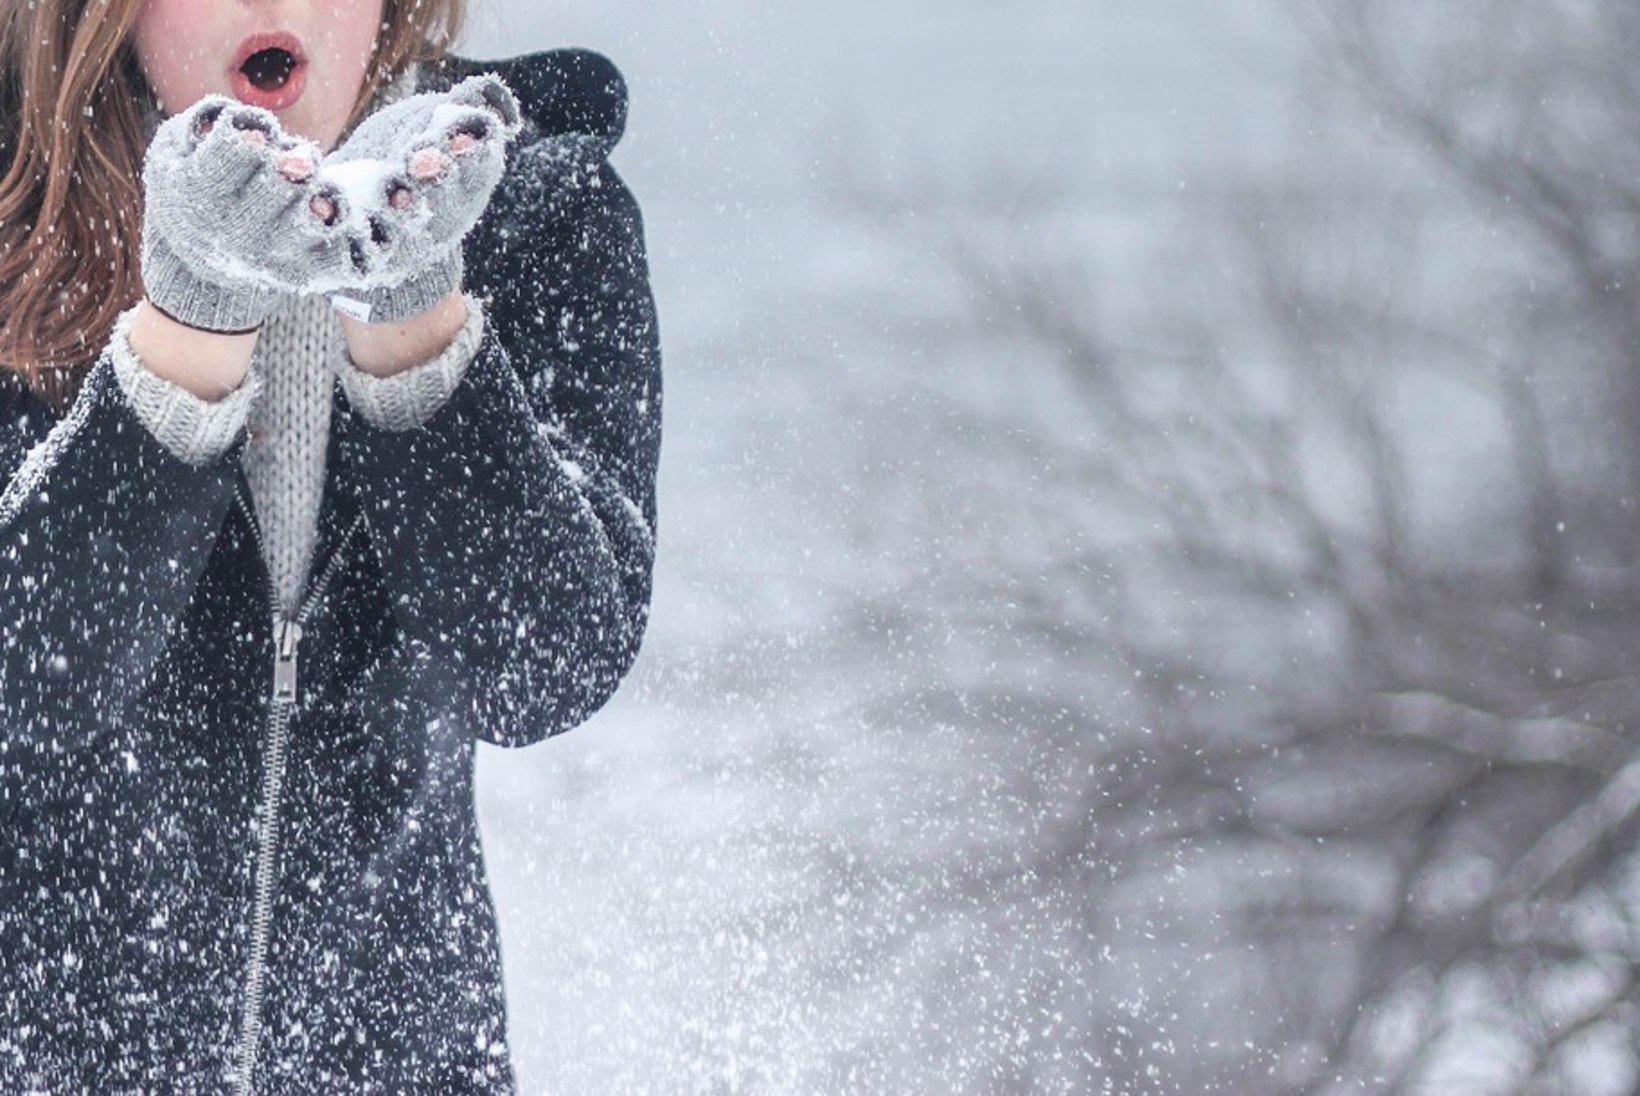 Külma ilma meelespea: 4 asja, mida pead teadma tervisest ja külmast ilmast